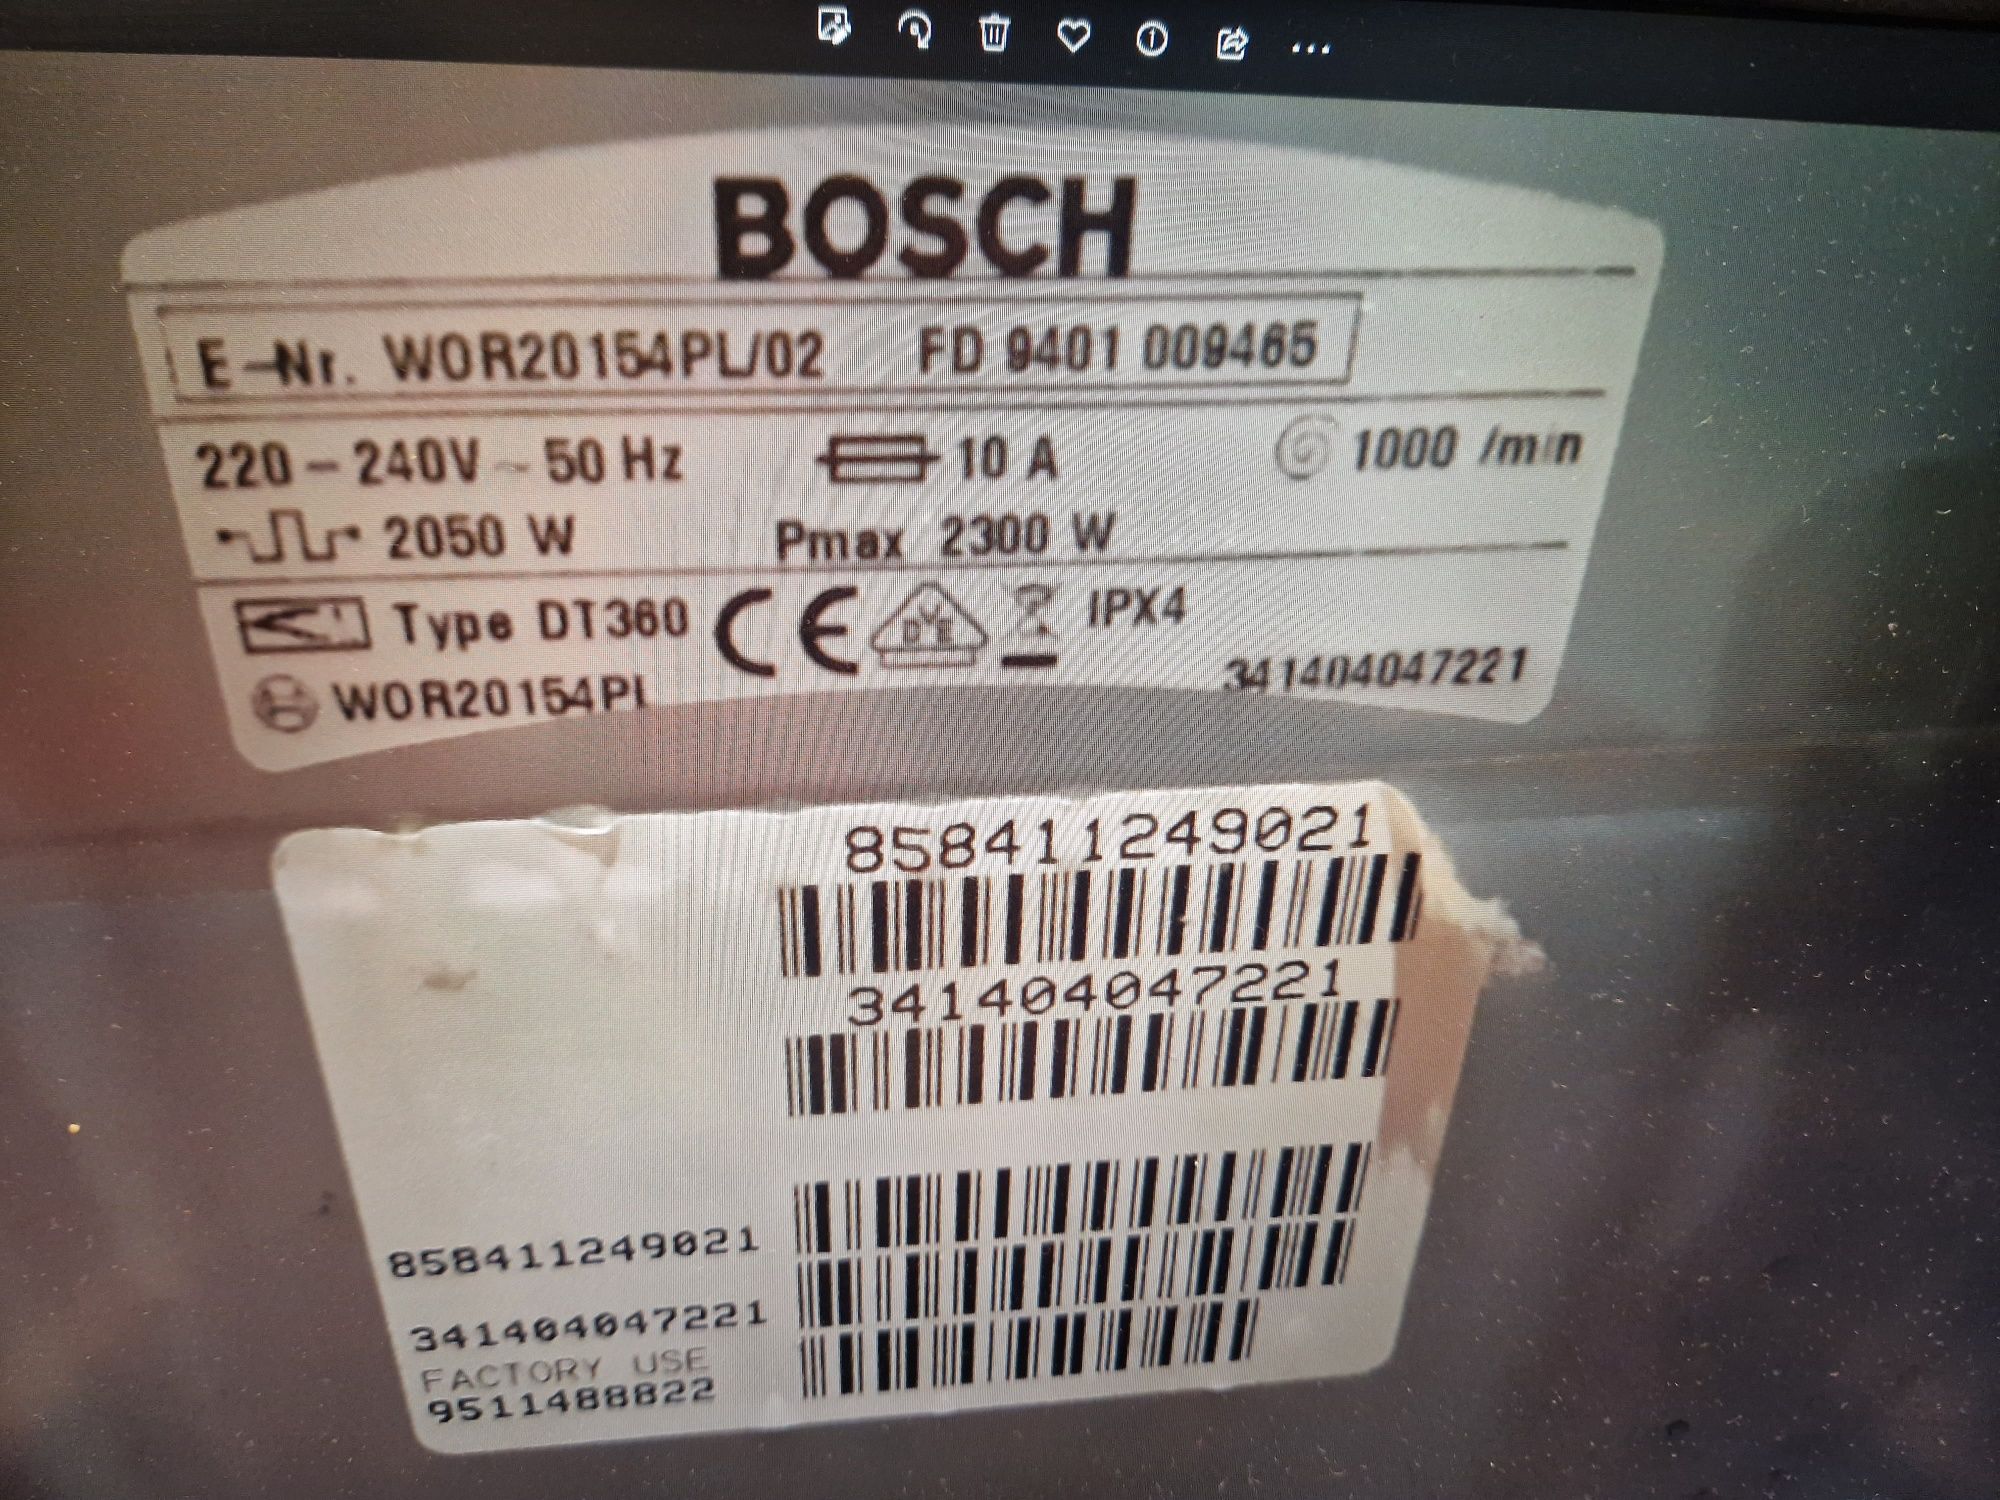 Programator pralki Bosch Stan bardzo dobry, wraz z kpl instalacją